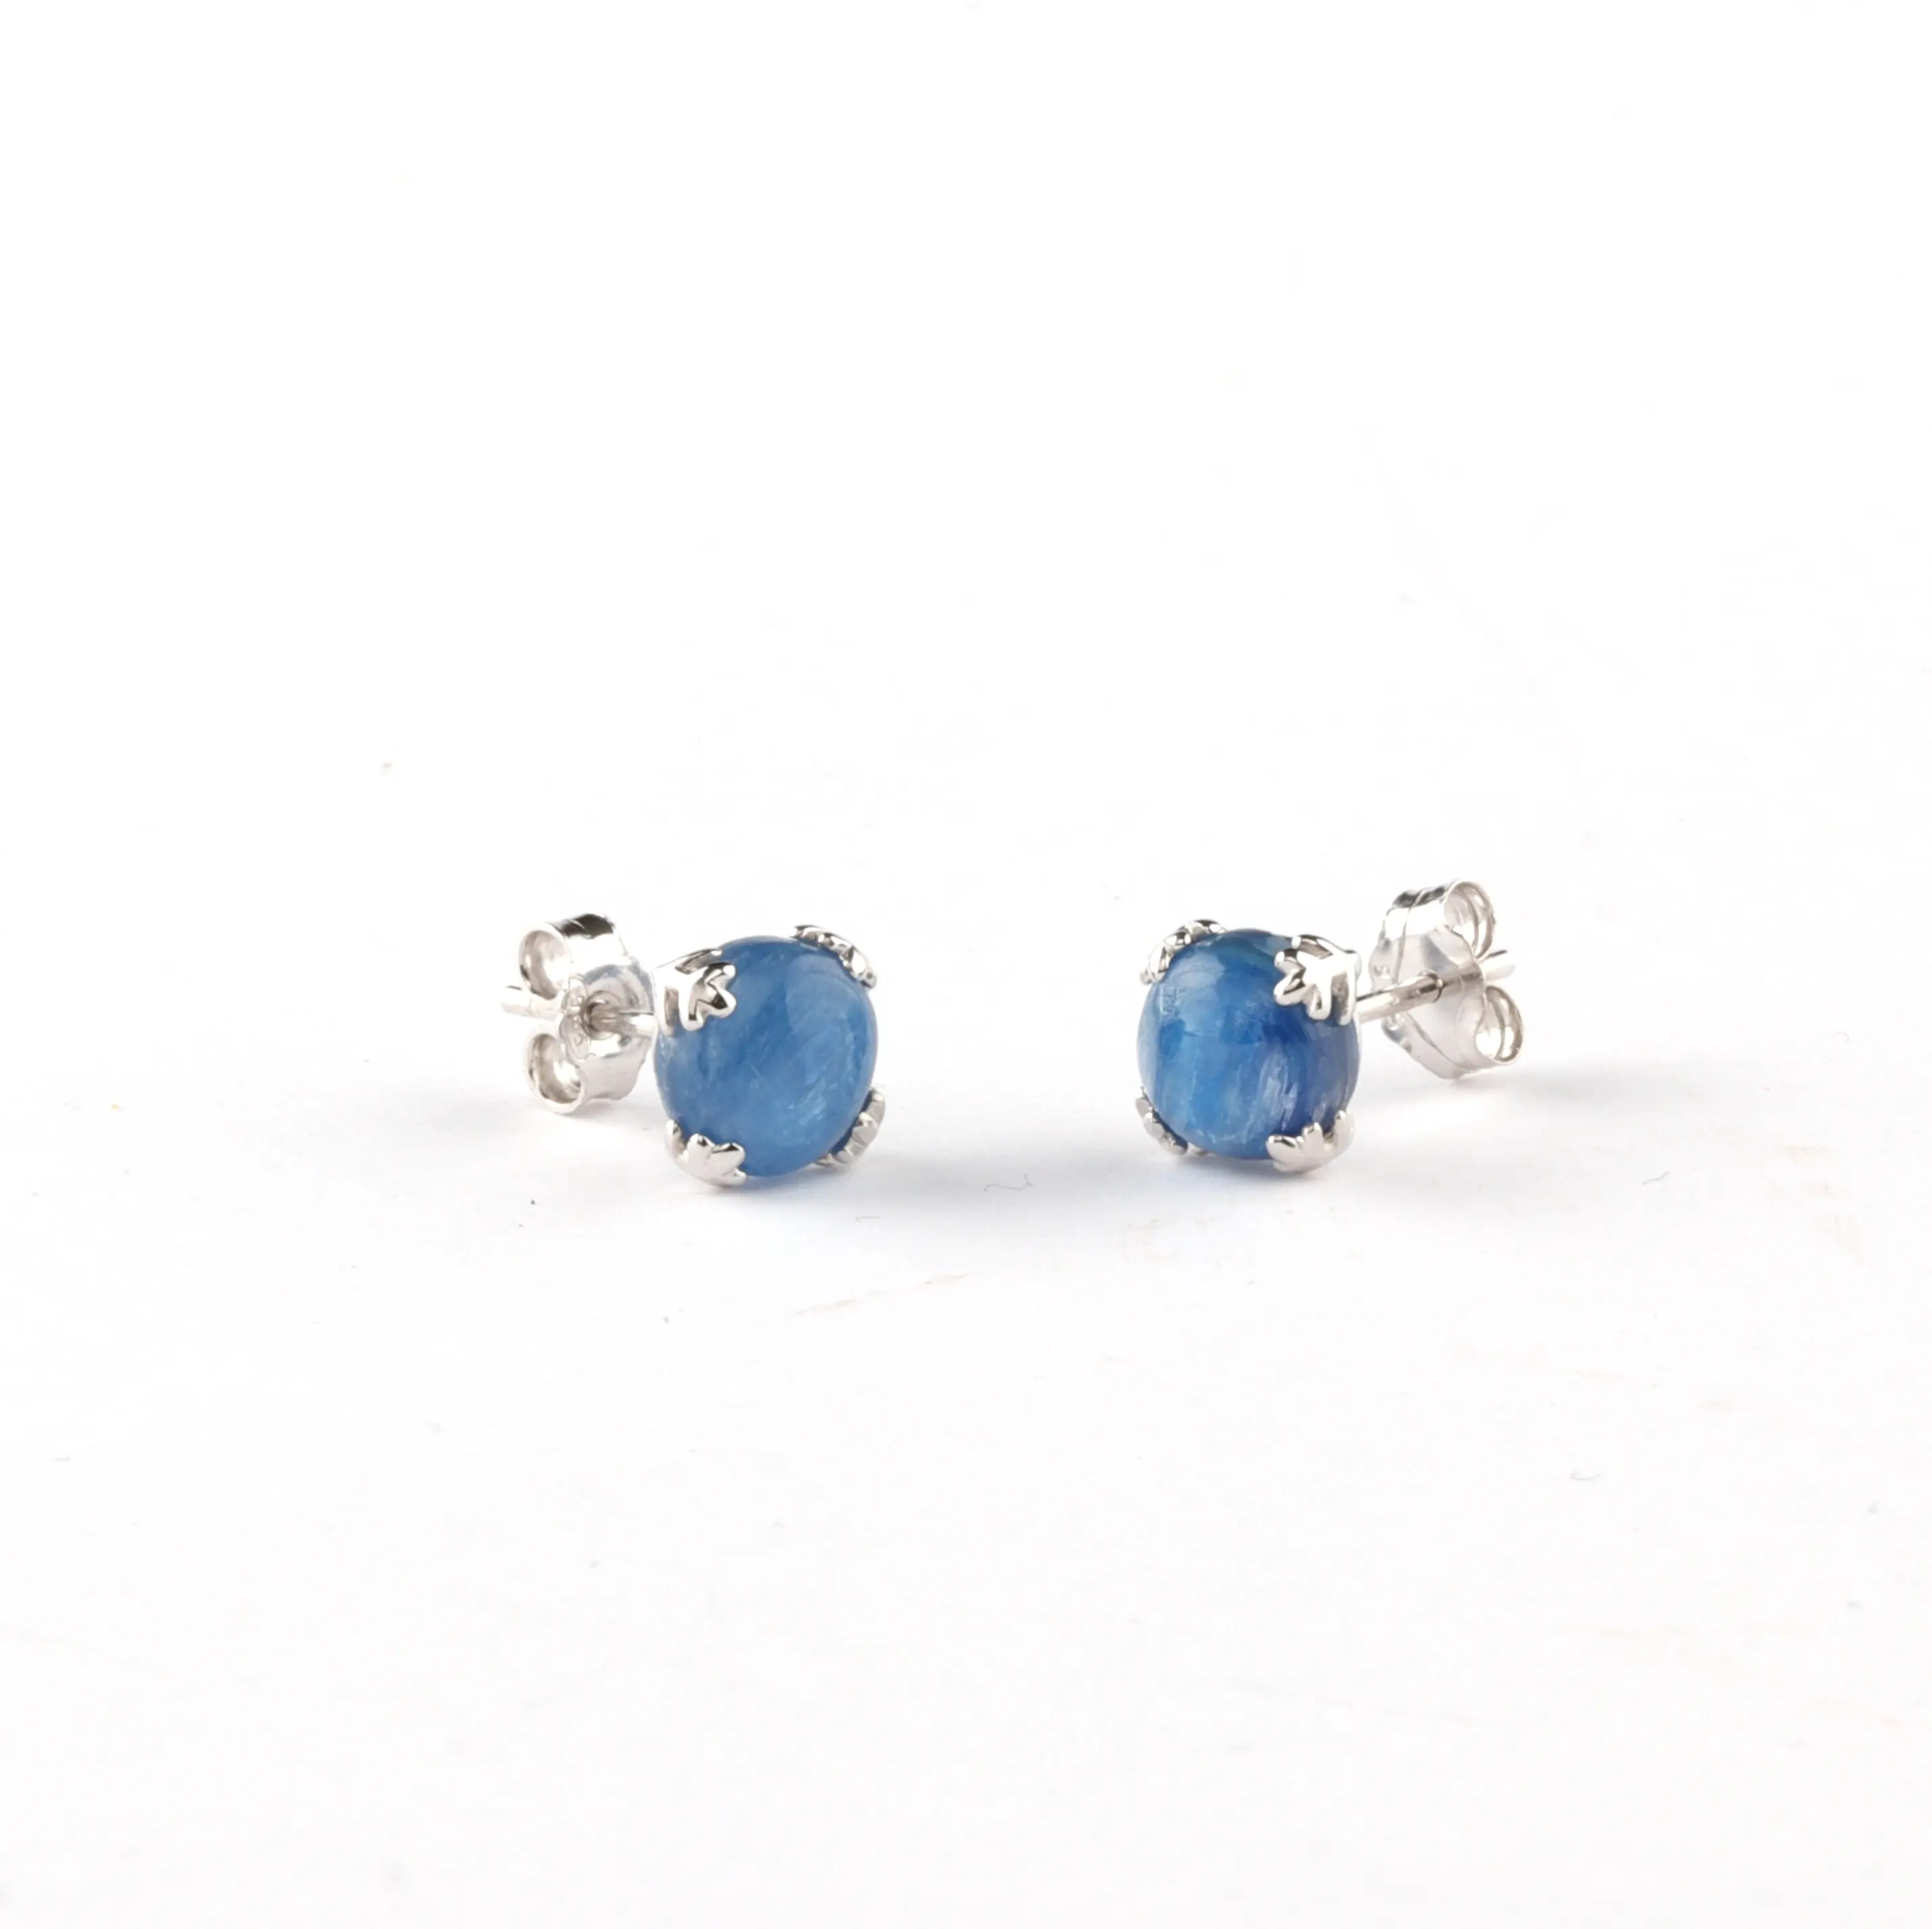 Silver Earrings 925 Silver Jewelry Blue Stone Kyanite Snowflake Gemstone Stud Earrings 925 Sterling Silver For Women